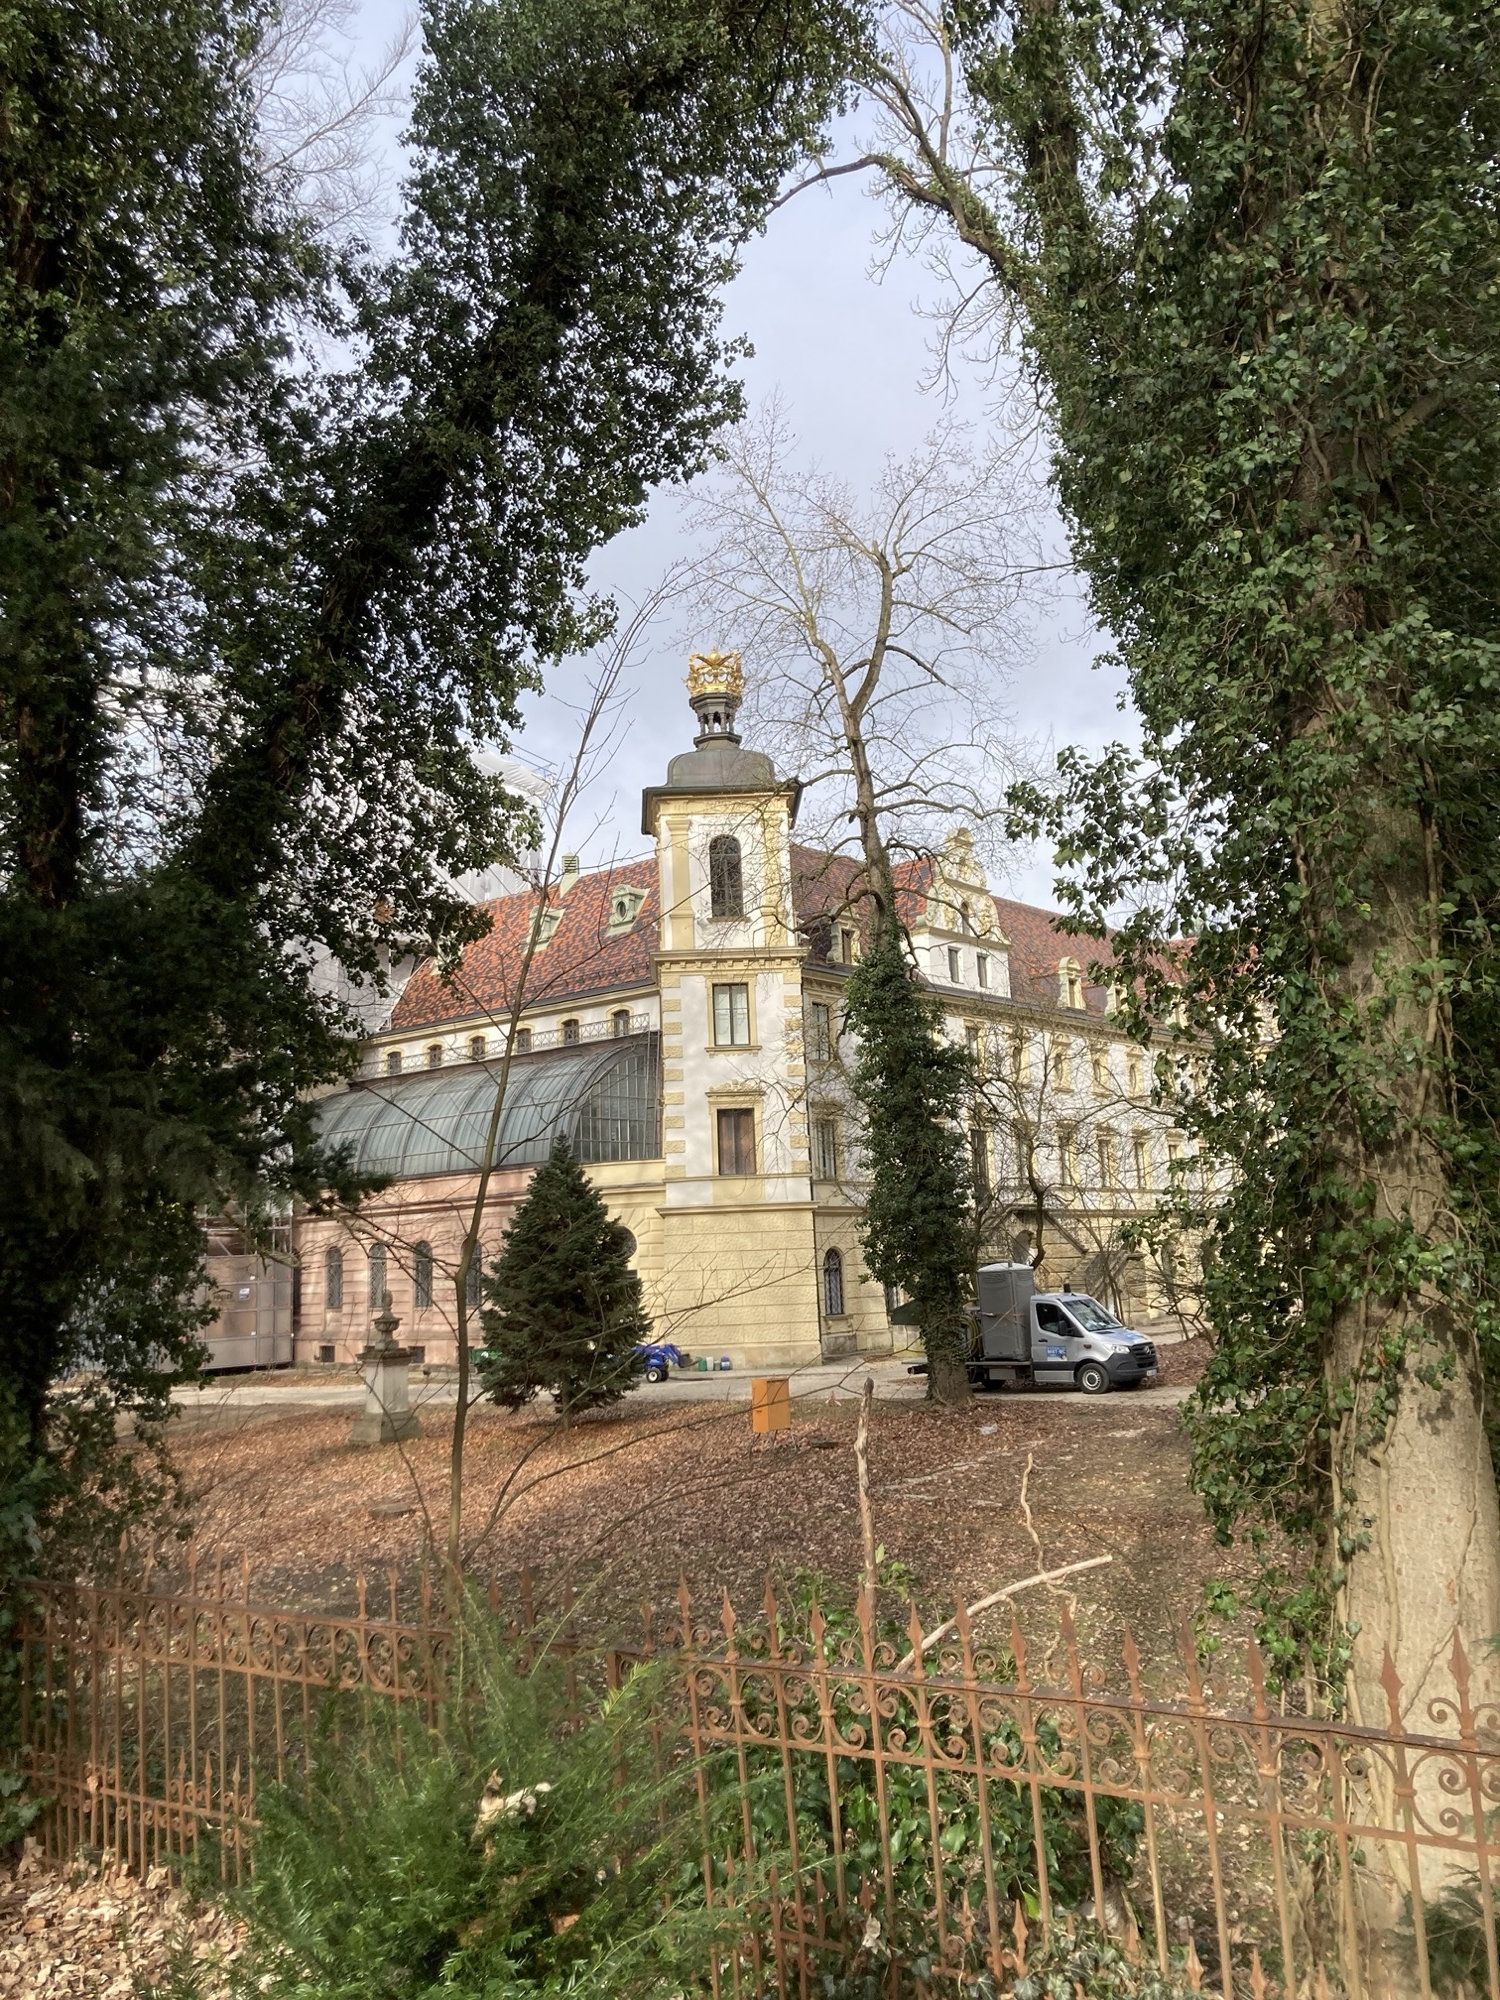 Schloss St. Emmeram Thurn und Taxis, im Vordergrund ein Zaun und zwei Bäume an den Seiten des Bilds, sie umrahmen einen Eckturm eines imposanten Gebäudes mit einem halbrunden Glasdach links und einem rot geziegelten Dach, der Turm ist an der Spitze von einer goldenen Krone geschmückt